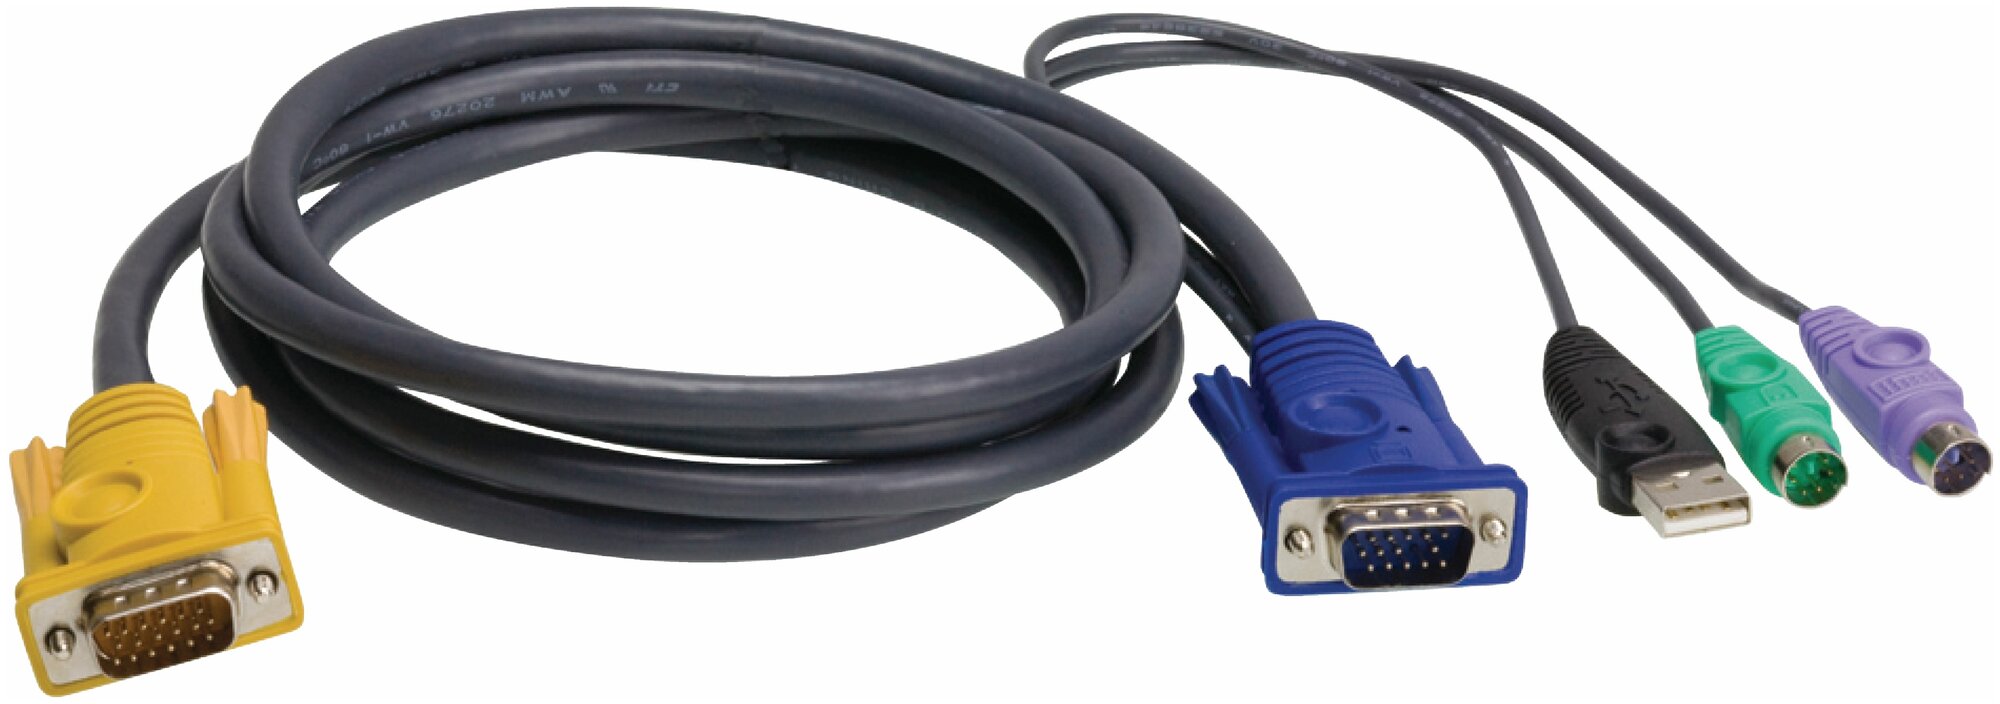 ATEN 2L-5302UP Шнур, мон, клав.+мышь USB, SPHD=>HD DB15+USB A-Тип+2x6MINI-DIN, Male-4xMale, 8+8 проводов, опрессованный, 1.8 метр, черный, (с поддерKой KVM PS/2) 2L-5302UP